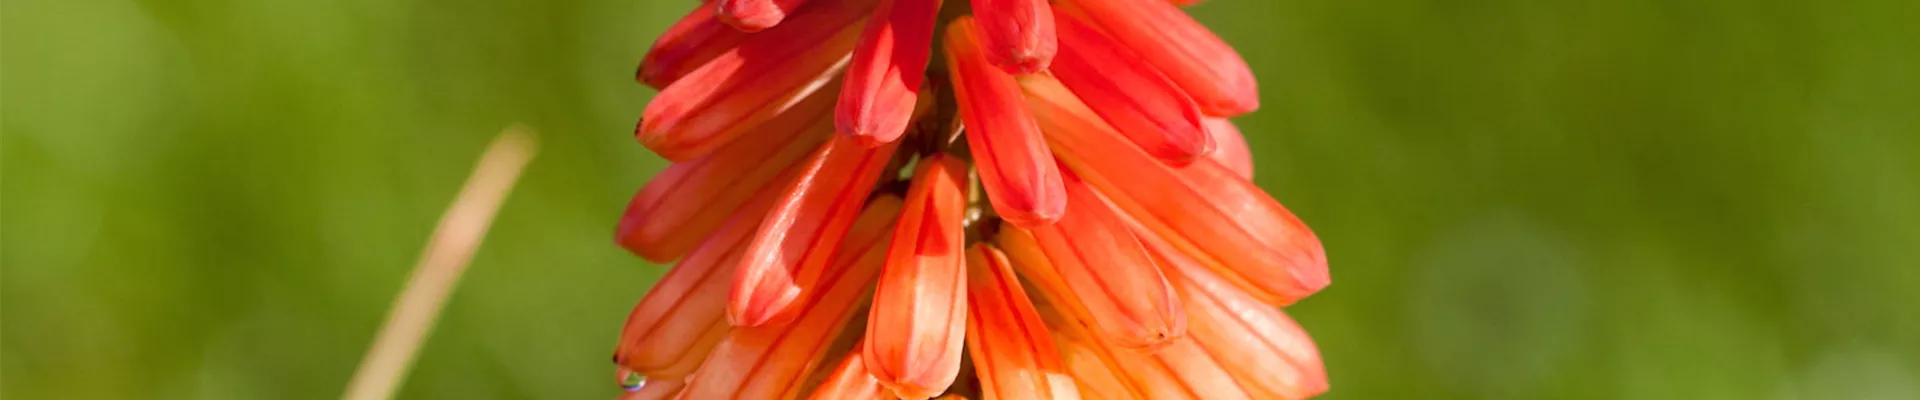 Fackellilie - Einpflanzen im Garten (thumbnail).jpg